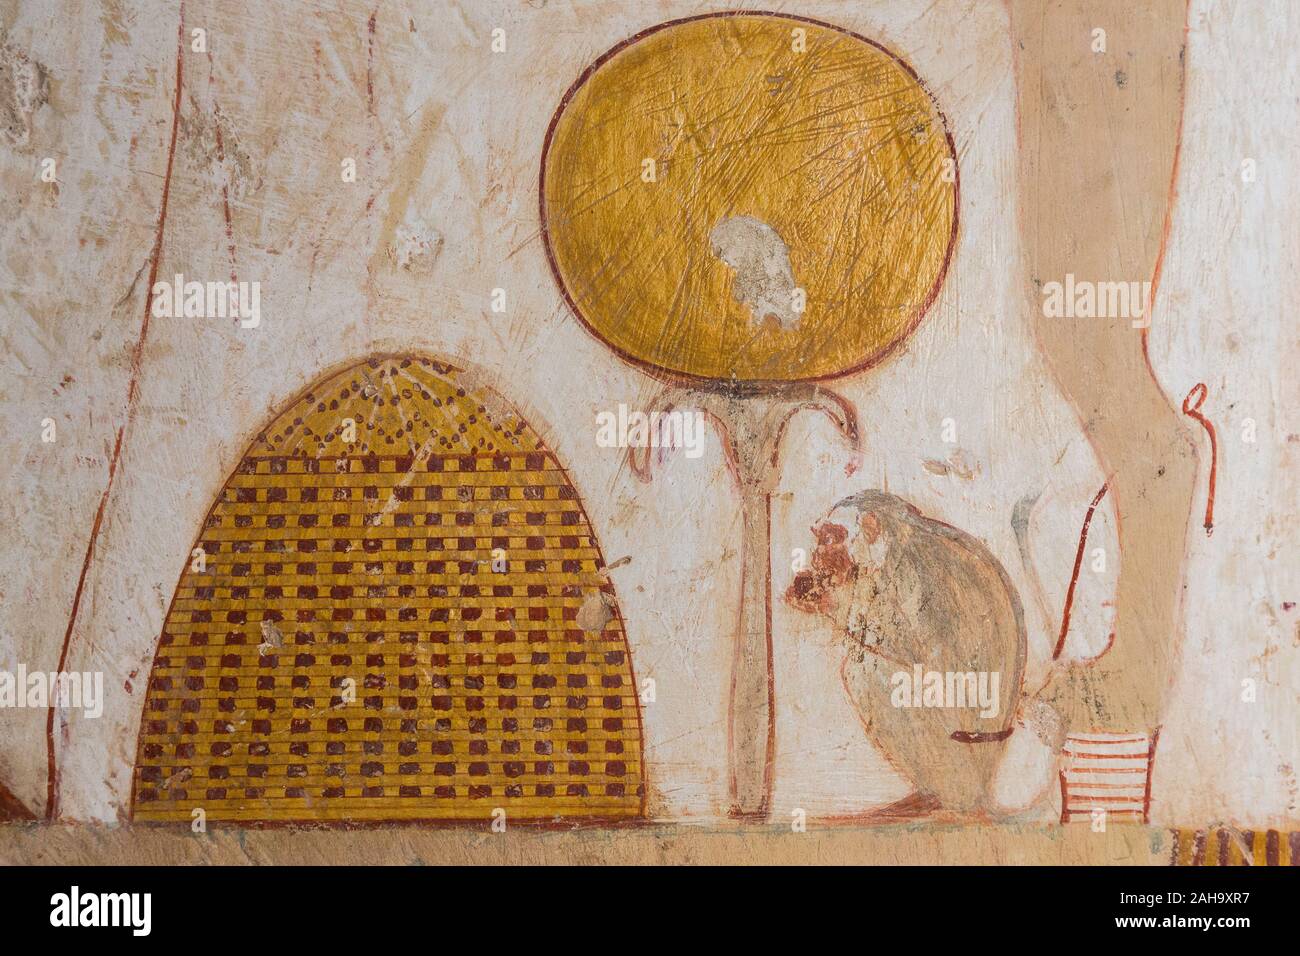 UNESCO World Heritage, Thèbes en Egypte, la vallée des Nobles, tombe de Userhat (numéro 56). En vertu de la présidence sont un miroir, son cas et un petit singe. Banque D'Images